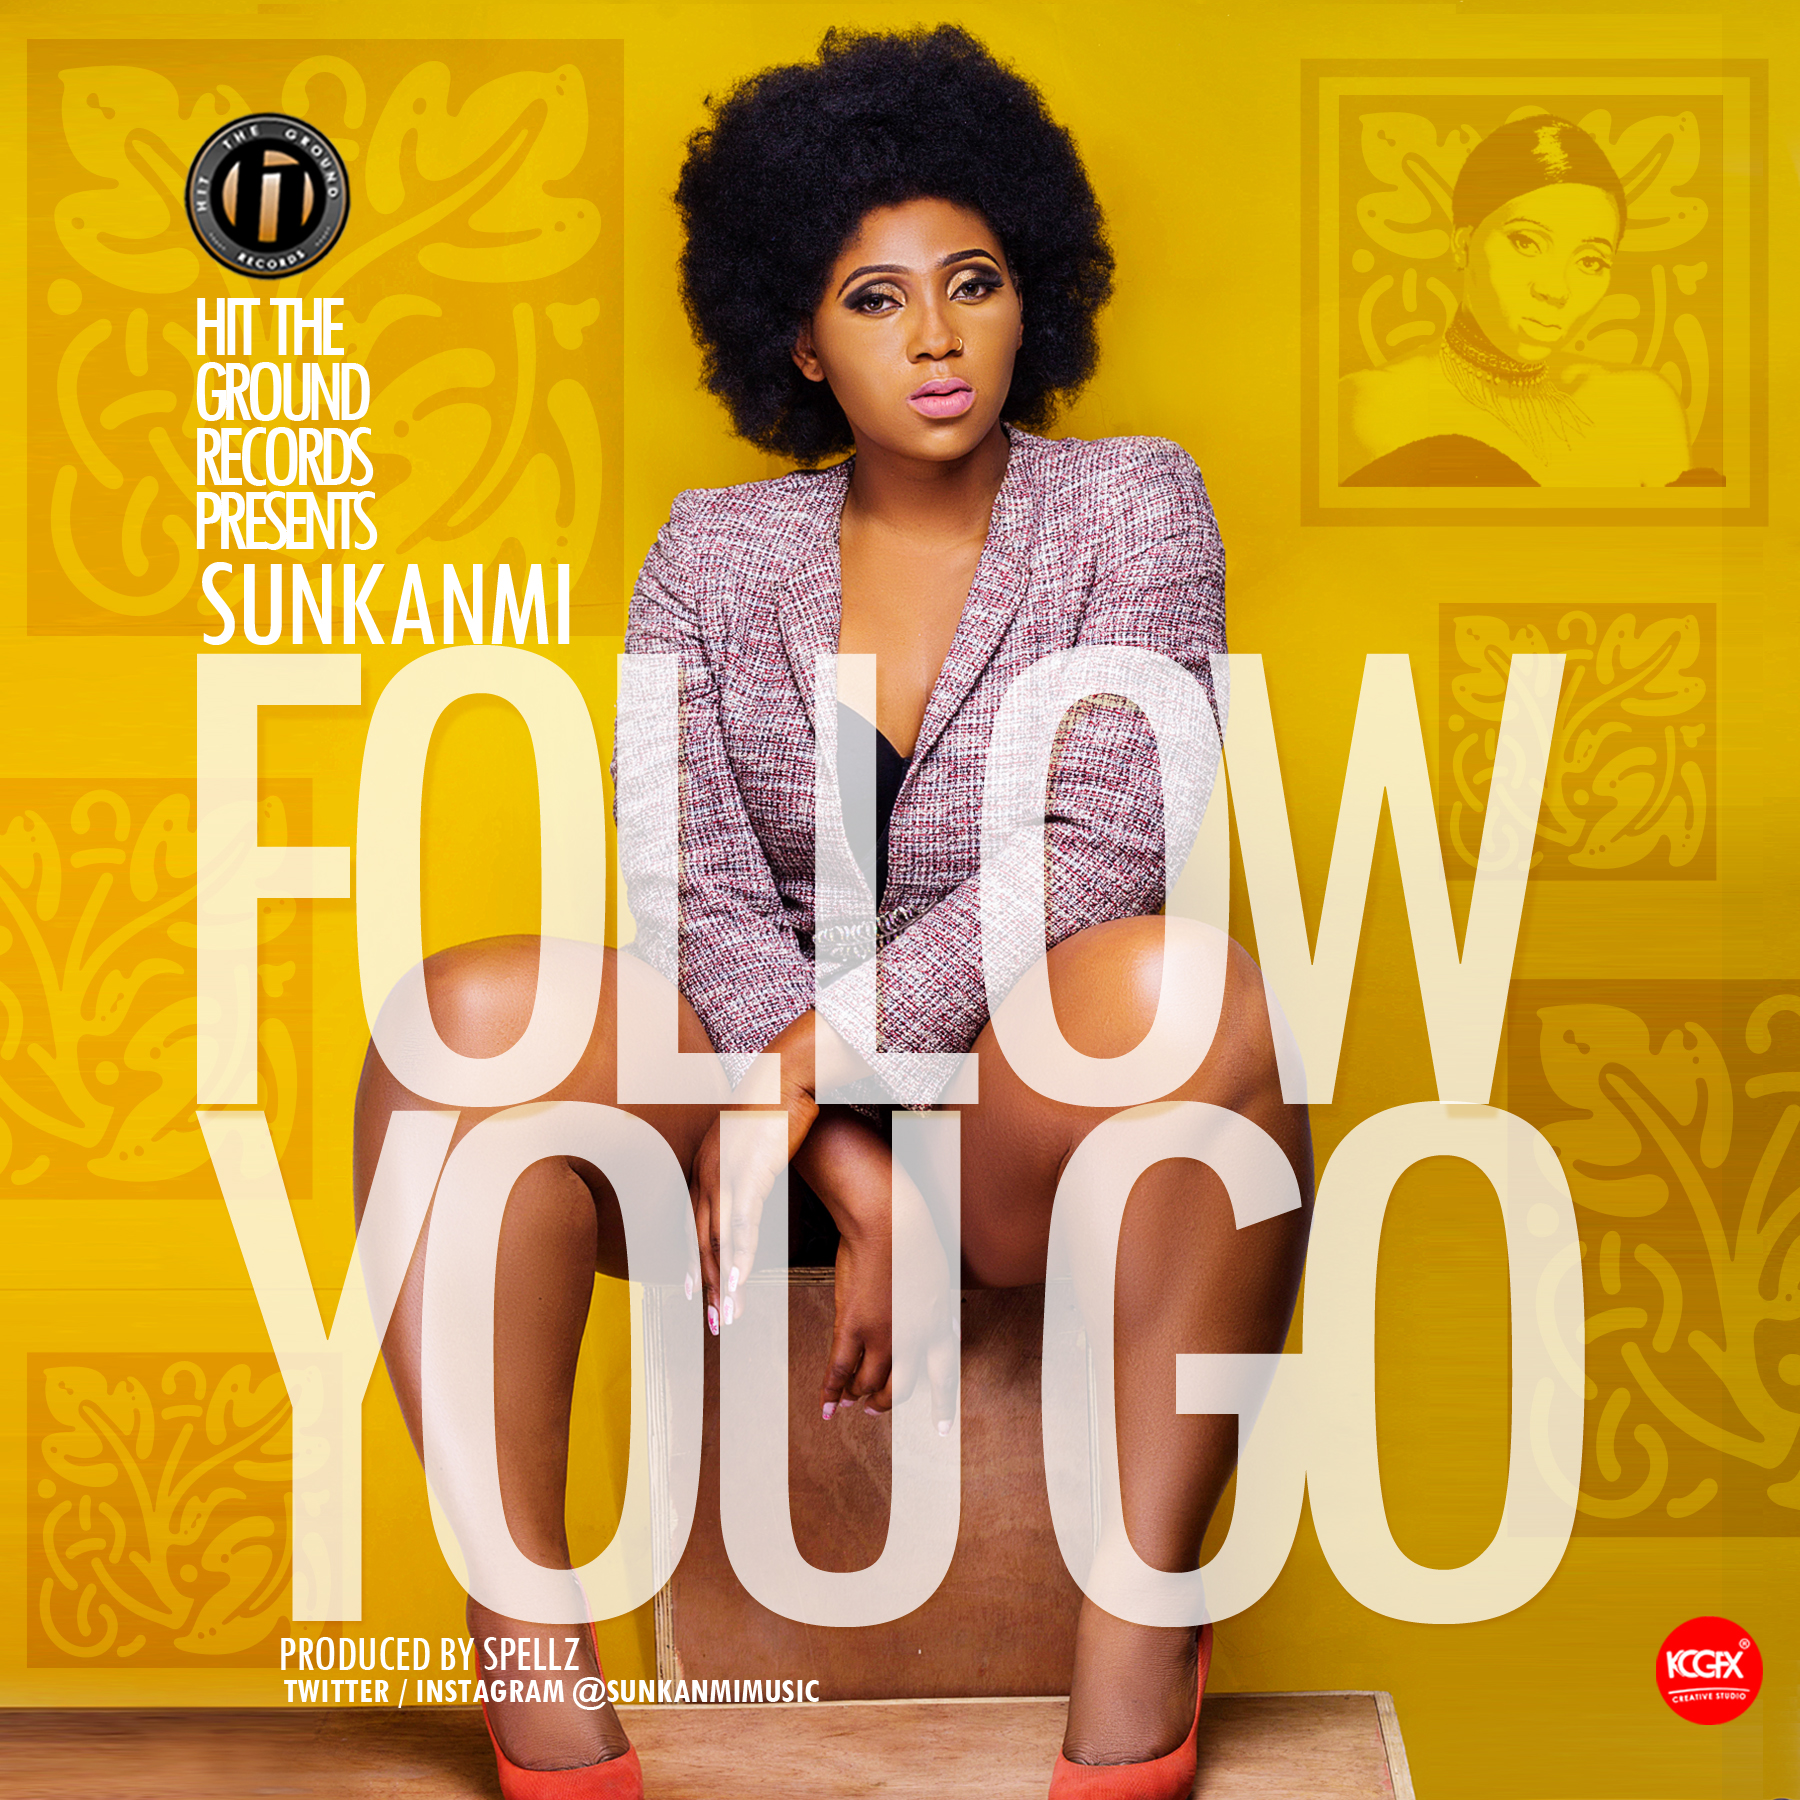 Sukanmi – Follow You Go